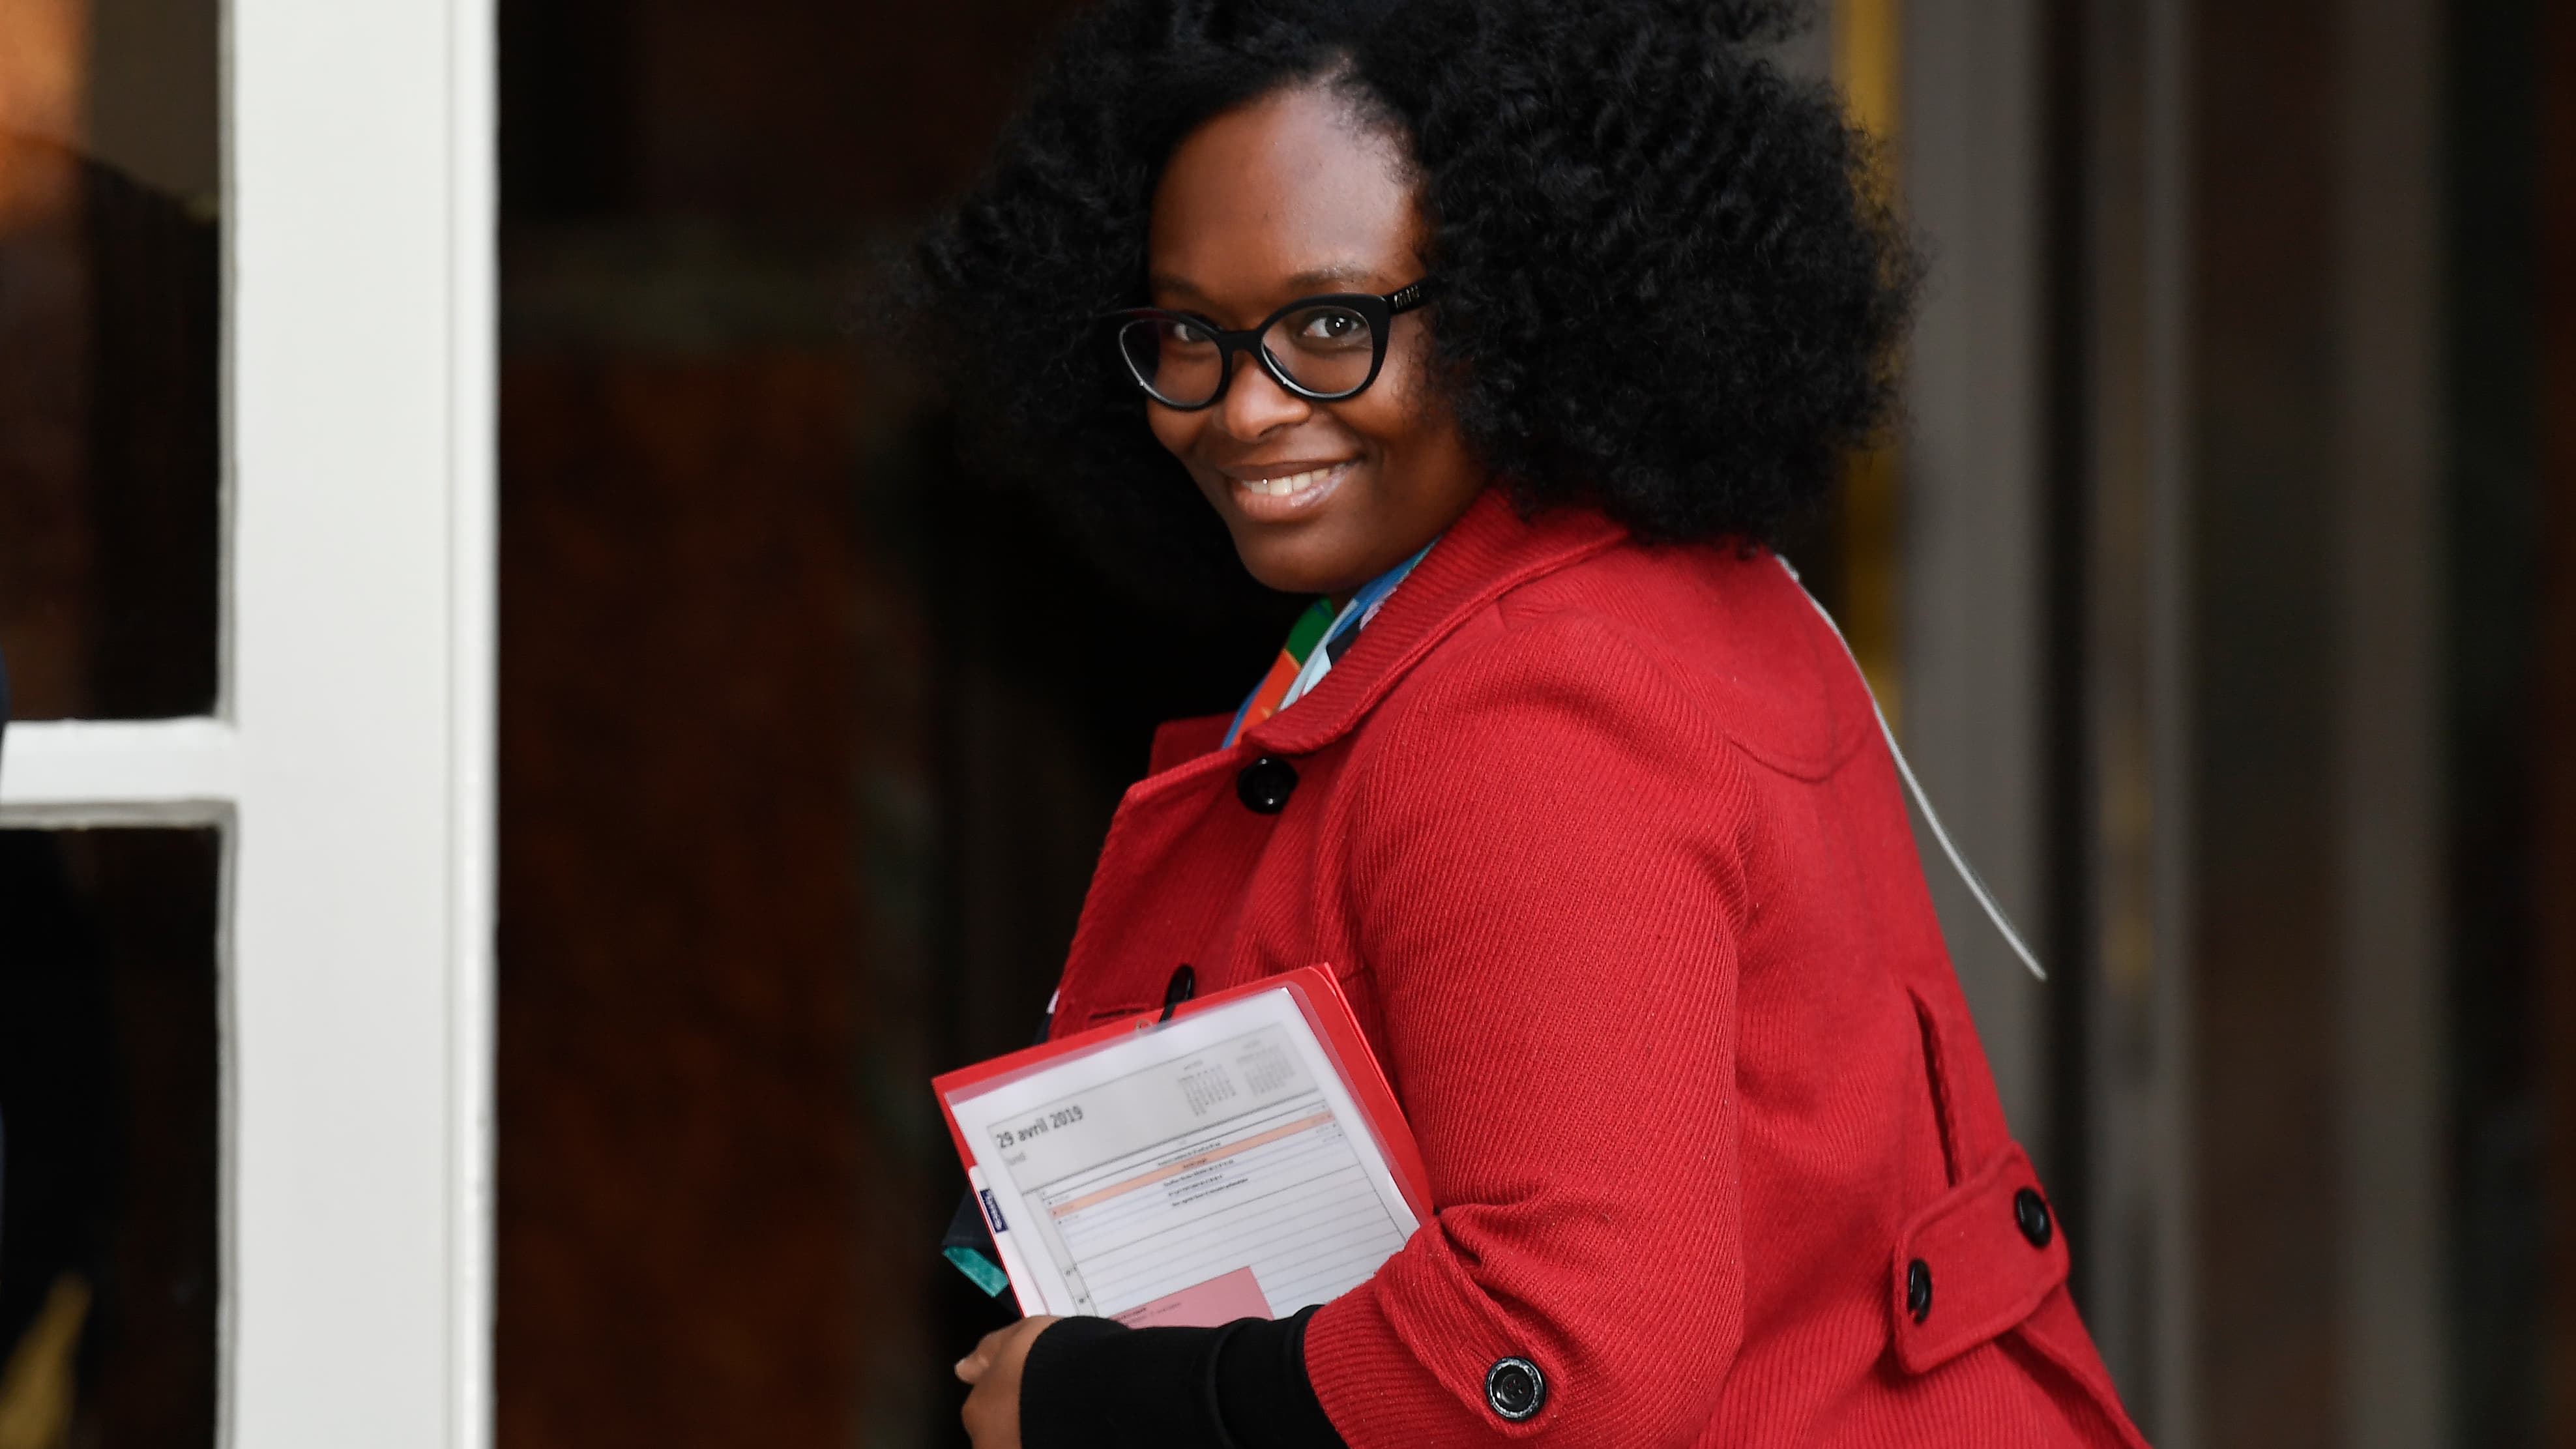 En tant que femme noire Sibeth Ndiaye se dit vaccinée contre les